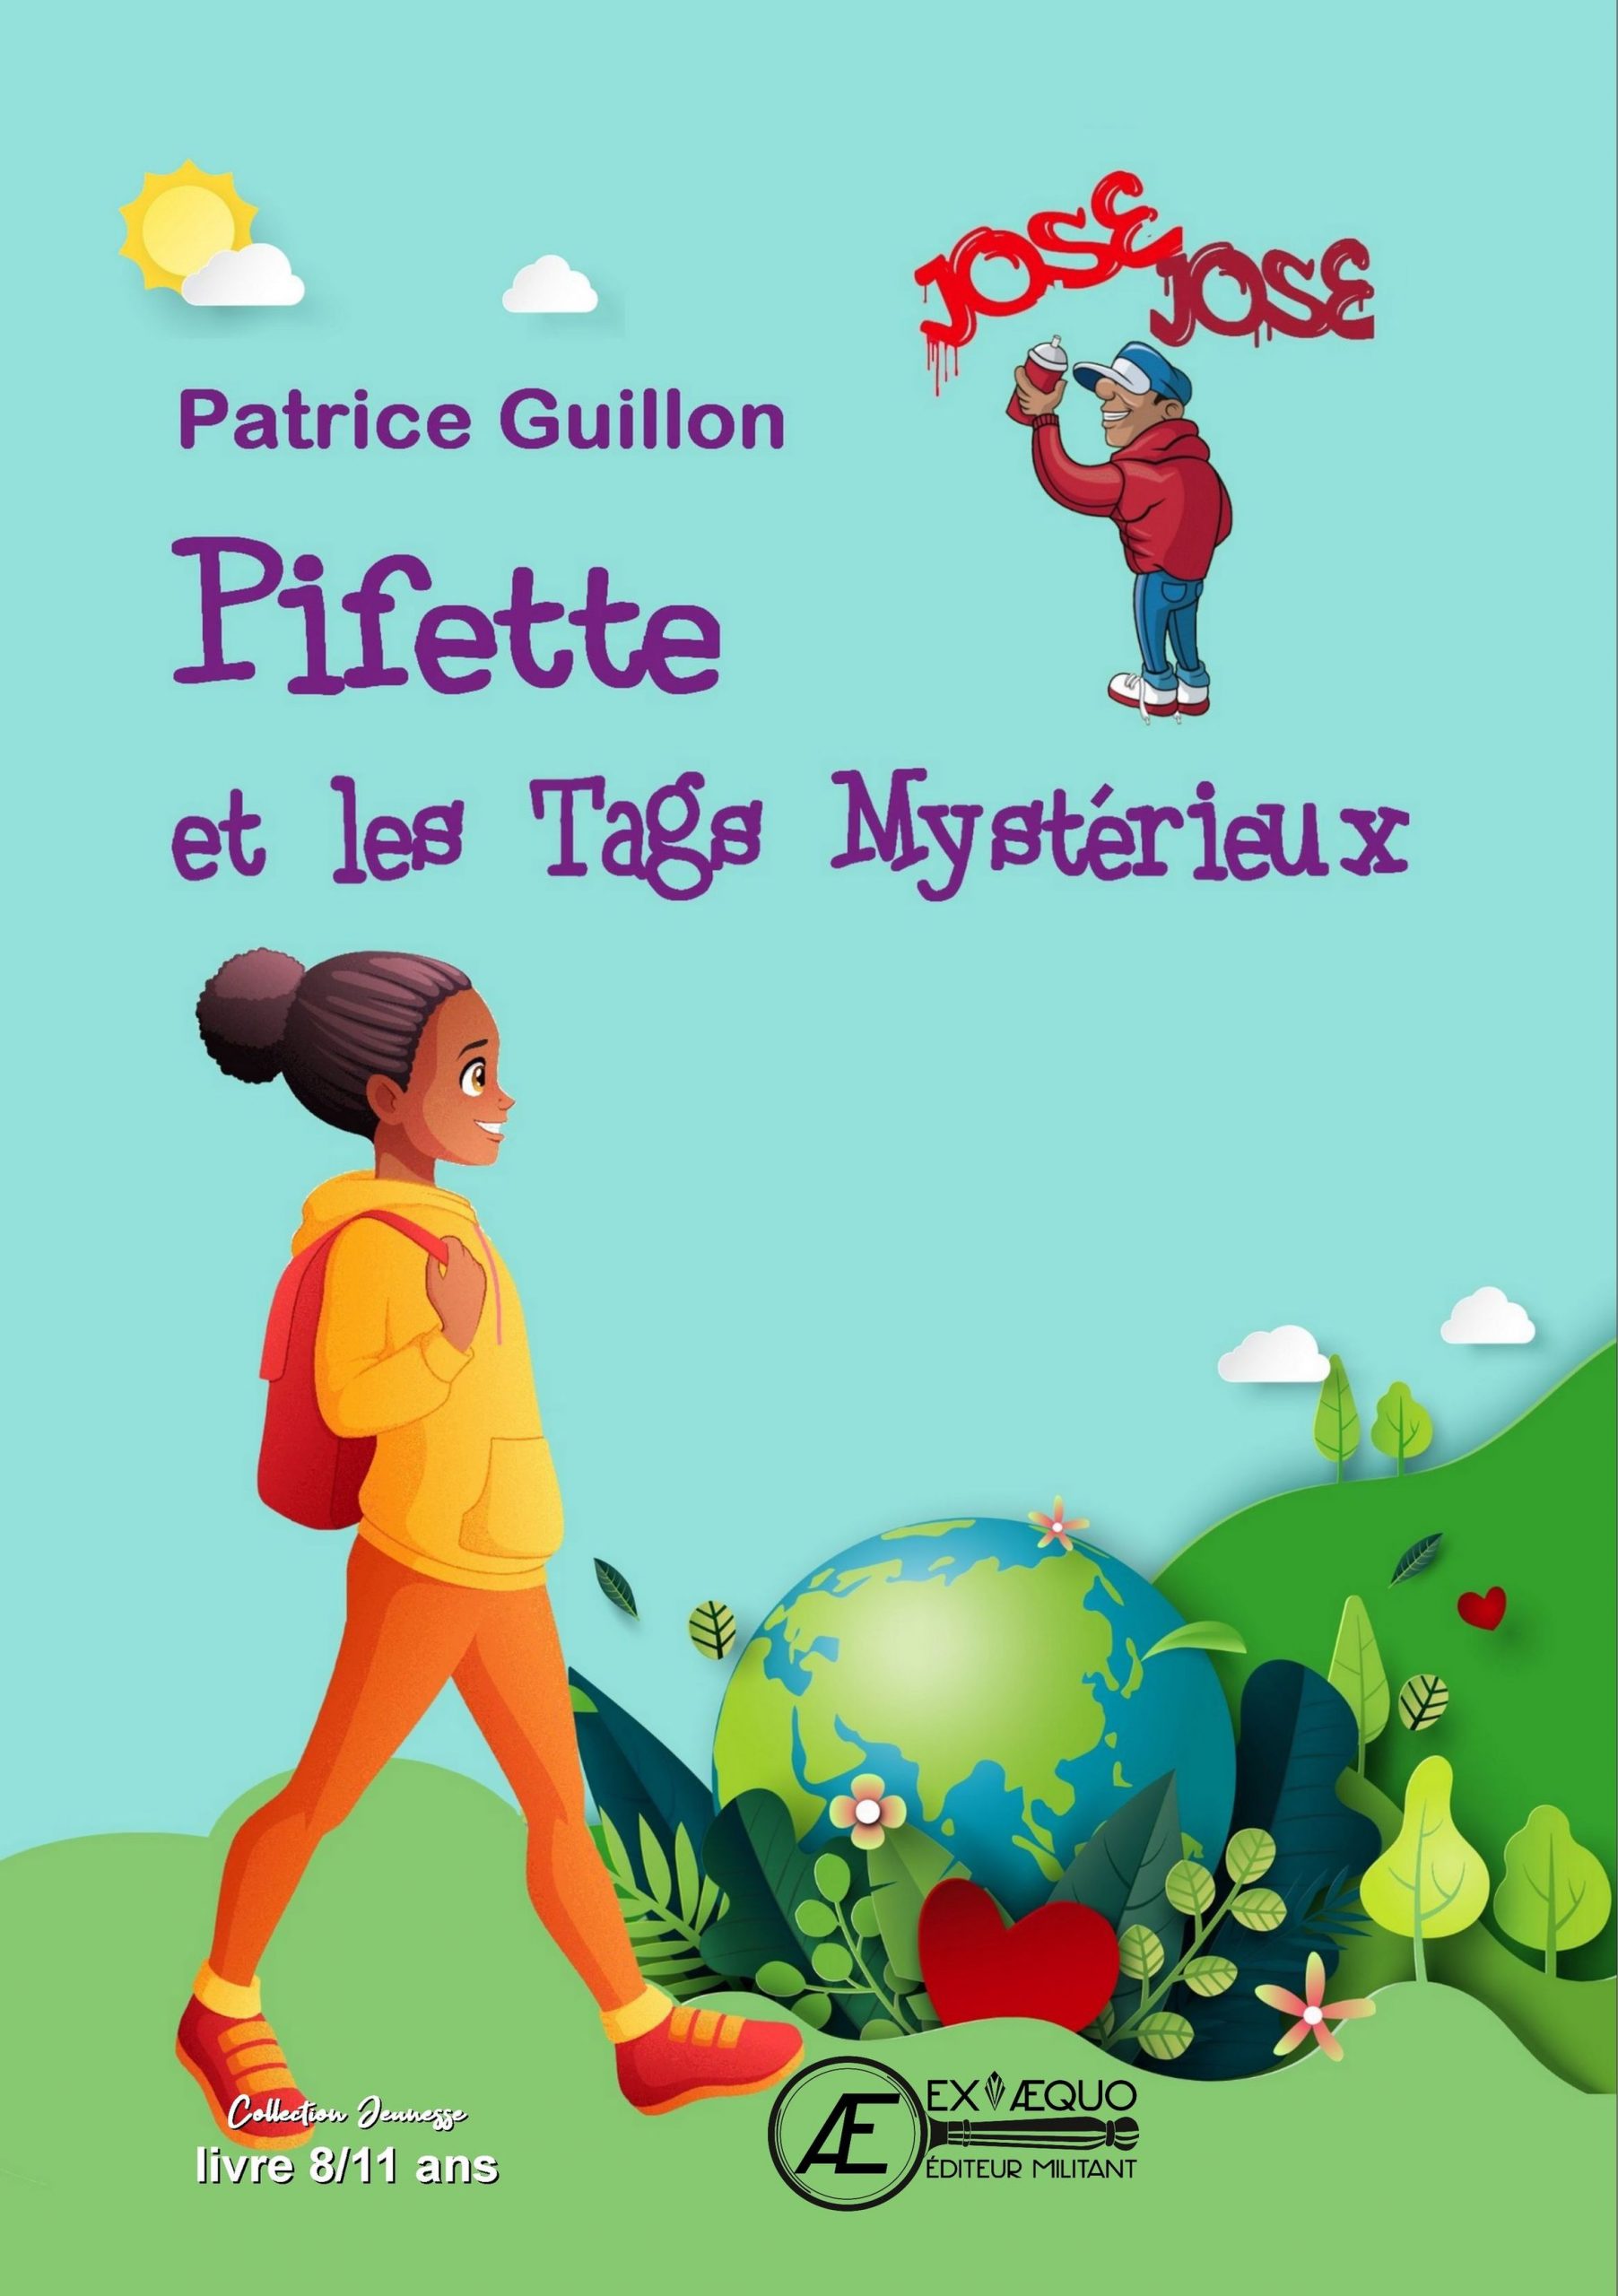 You are currently viewing Pifette et les tags mystérieux, de Patrice Guillon